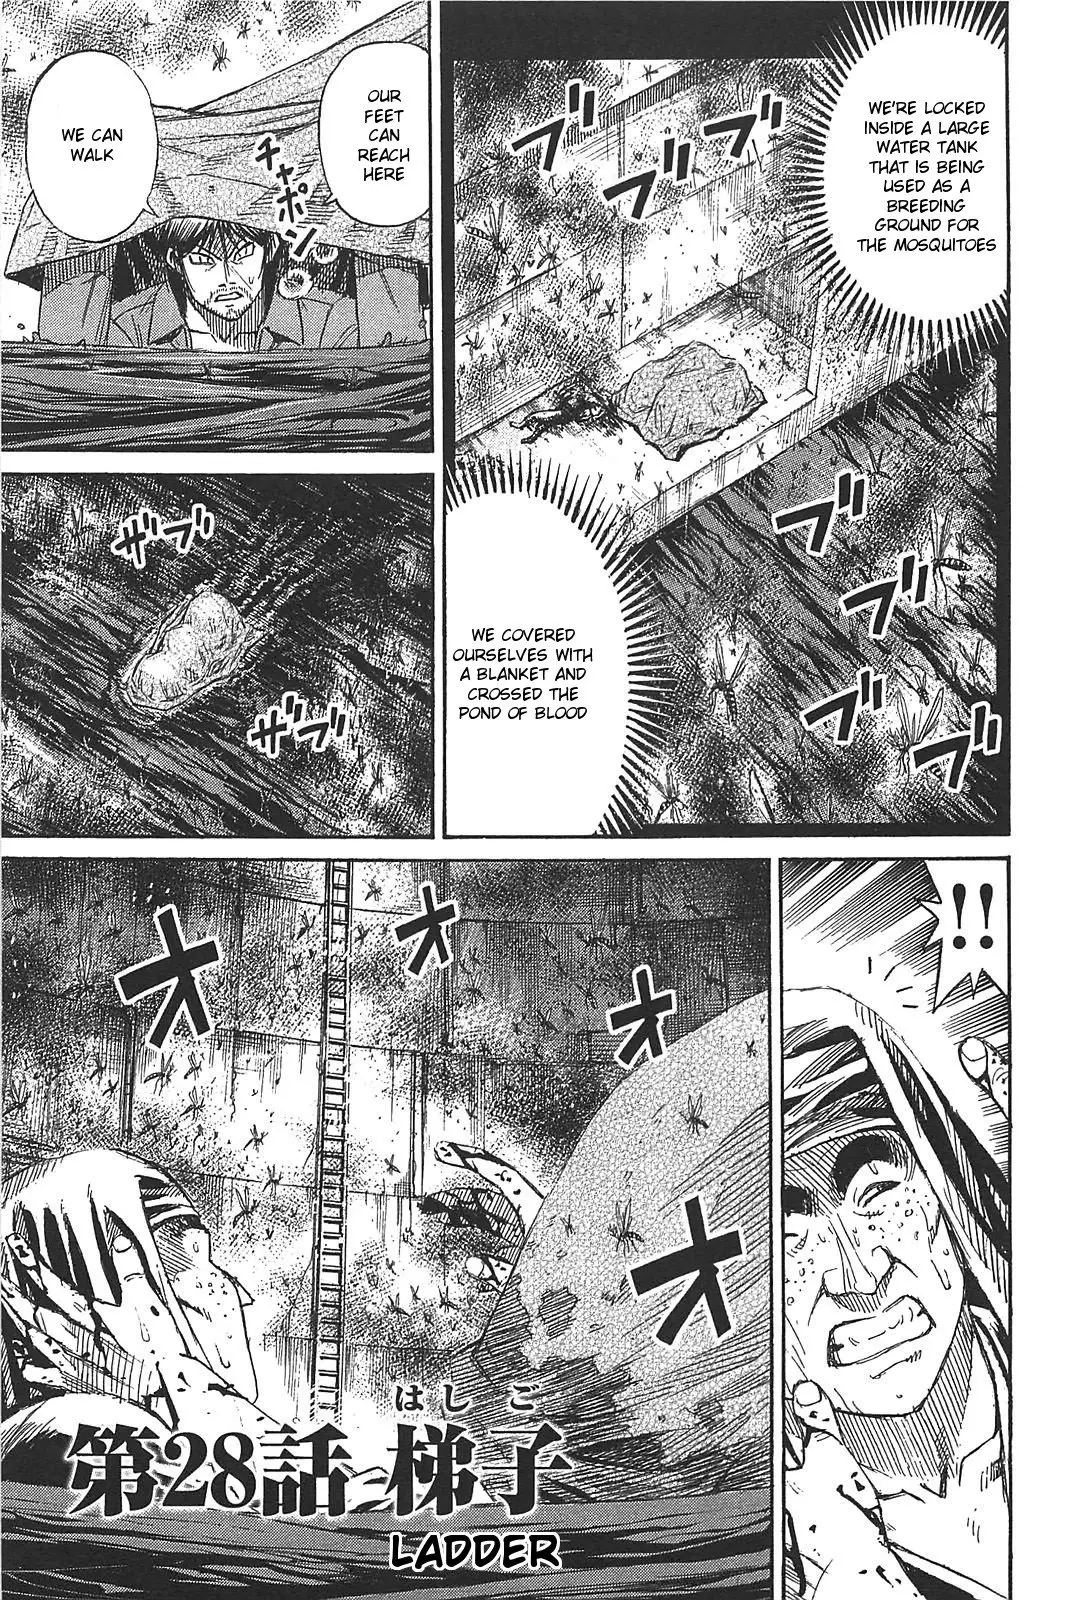 Higanjima - Last 47 Days - 28 page 1